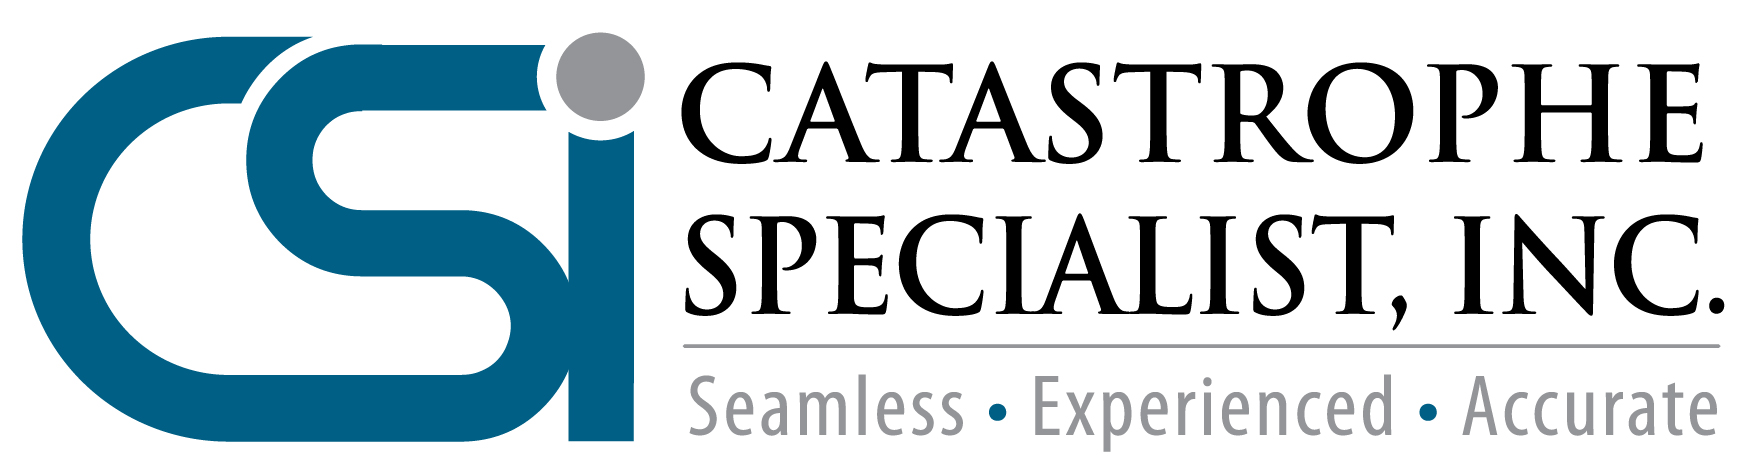 Catastrophe Specialist, Inc.